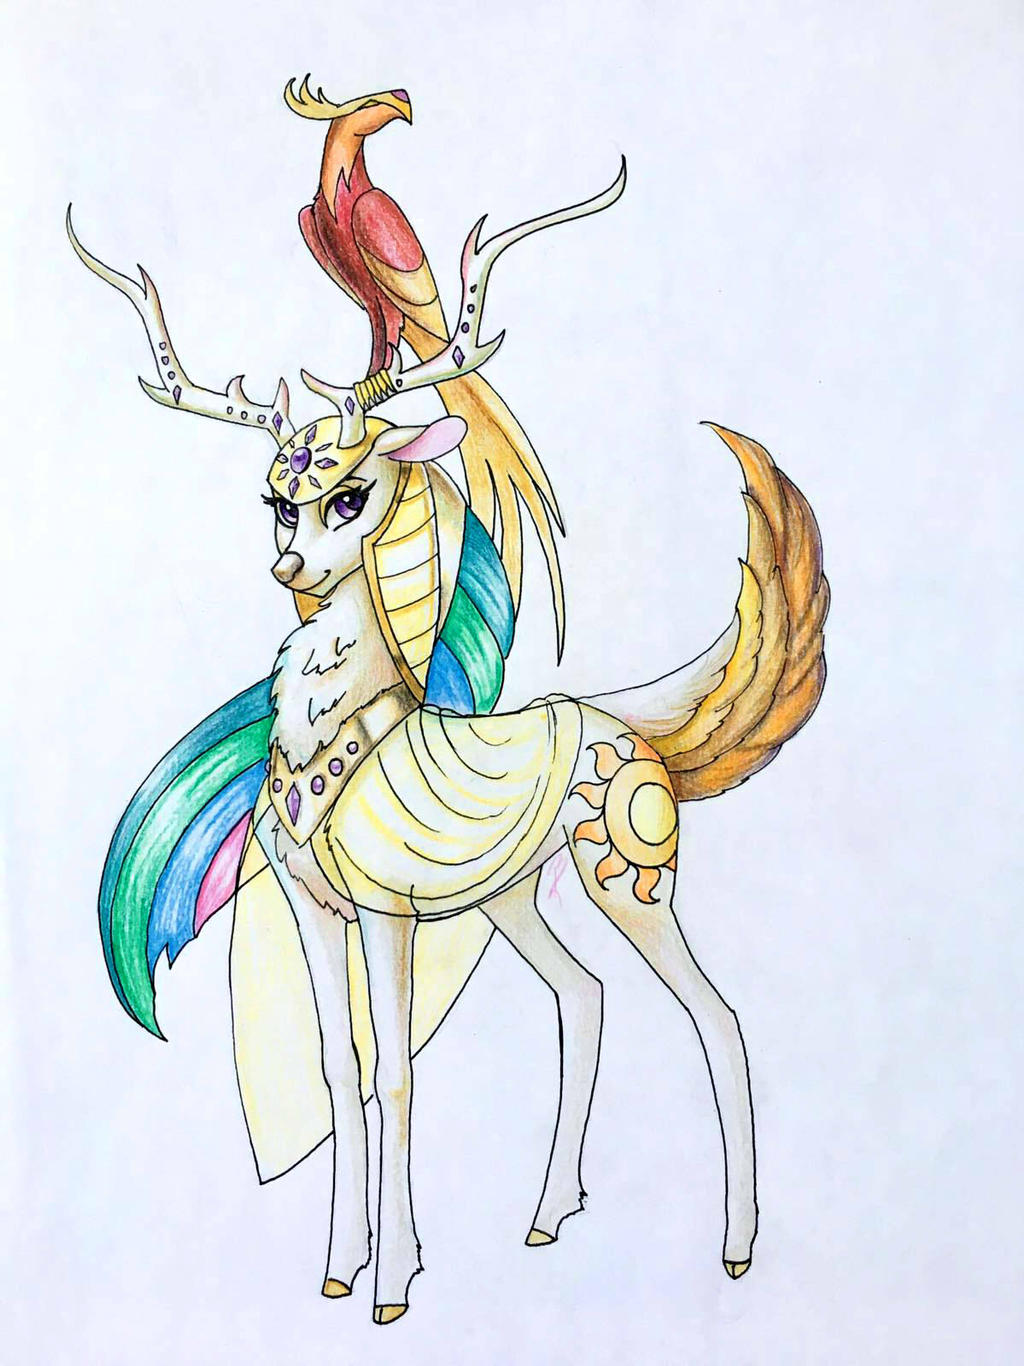 Deer Princess Celestia (PUN INTENDED)